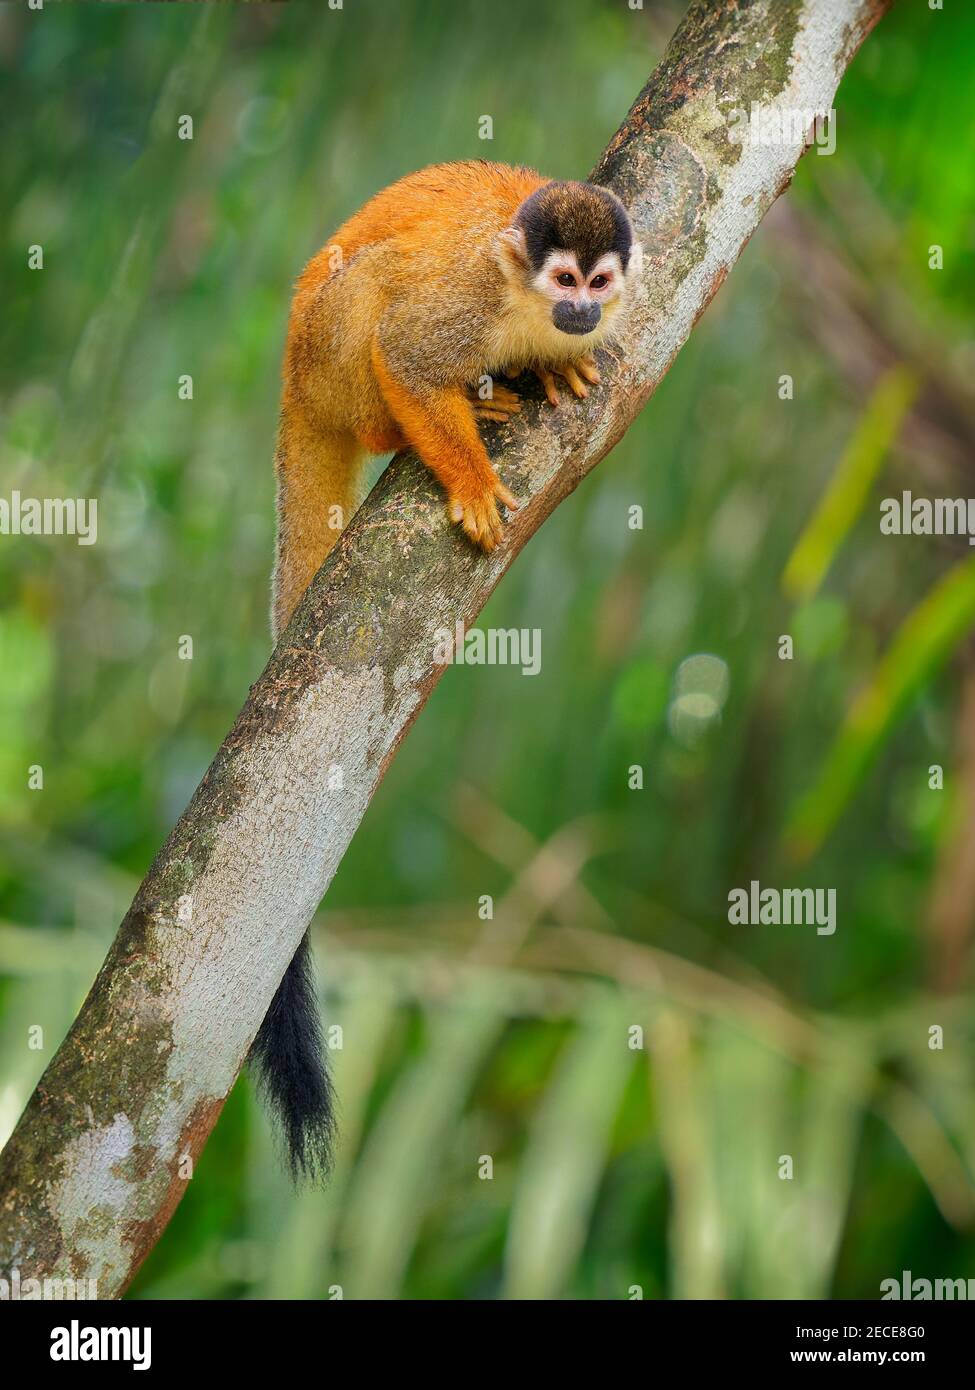 Scimmia scoiattolo dell'America centrale - saimiri oerstedii anche scimmia scoiattolo rosso, nelle foreste tropicali dell'America Centrale e del Sud nel cano Foto Stock